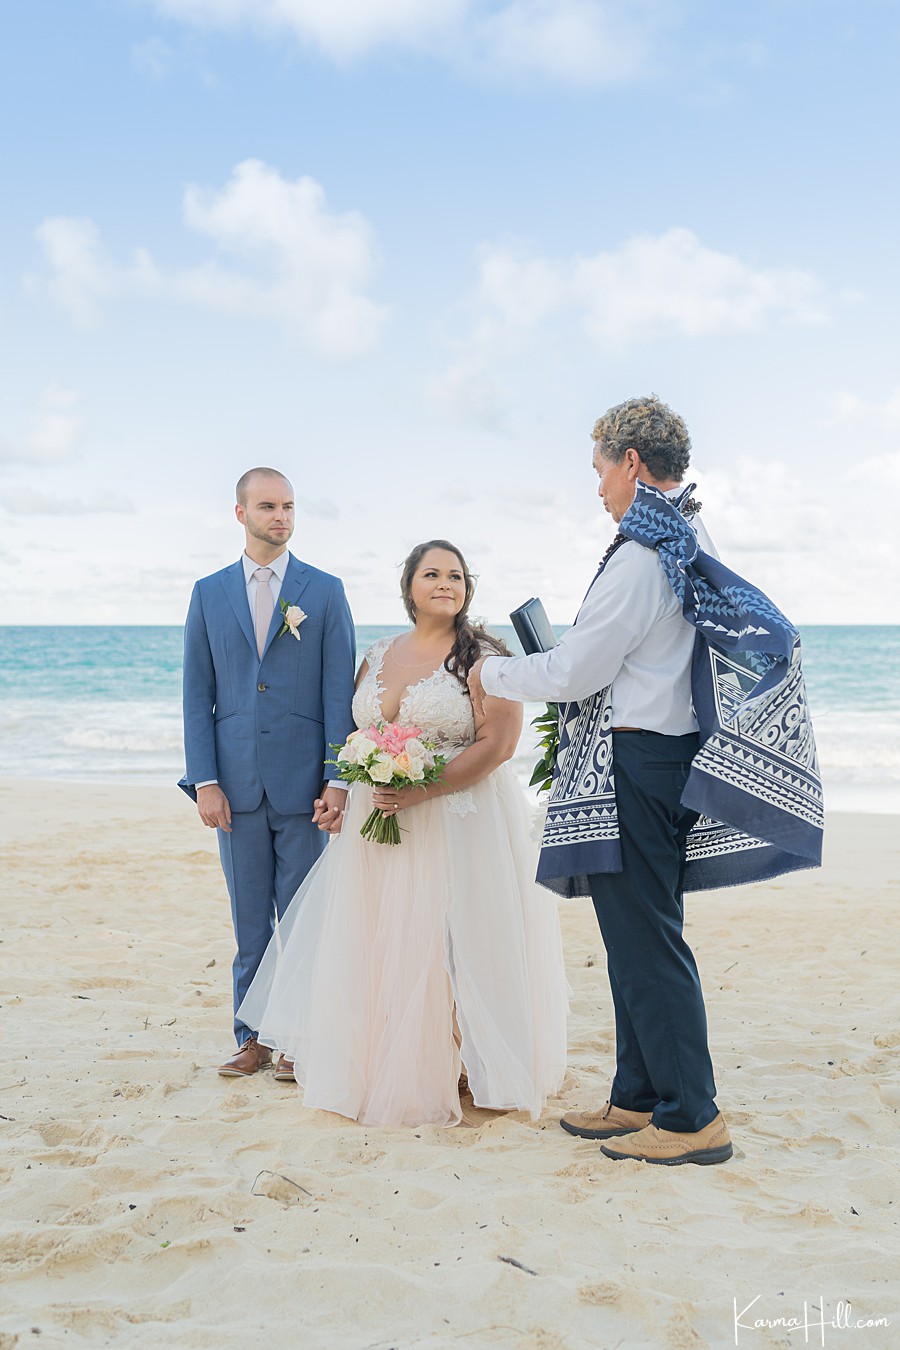 Wedding officiants Oahu Hawaii
